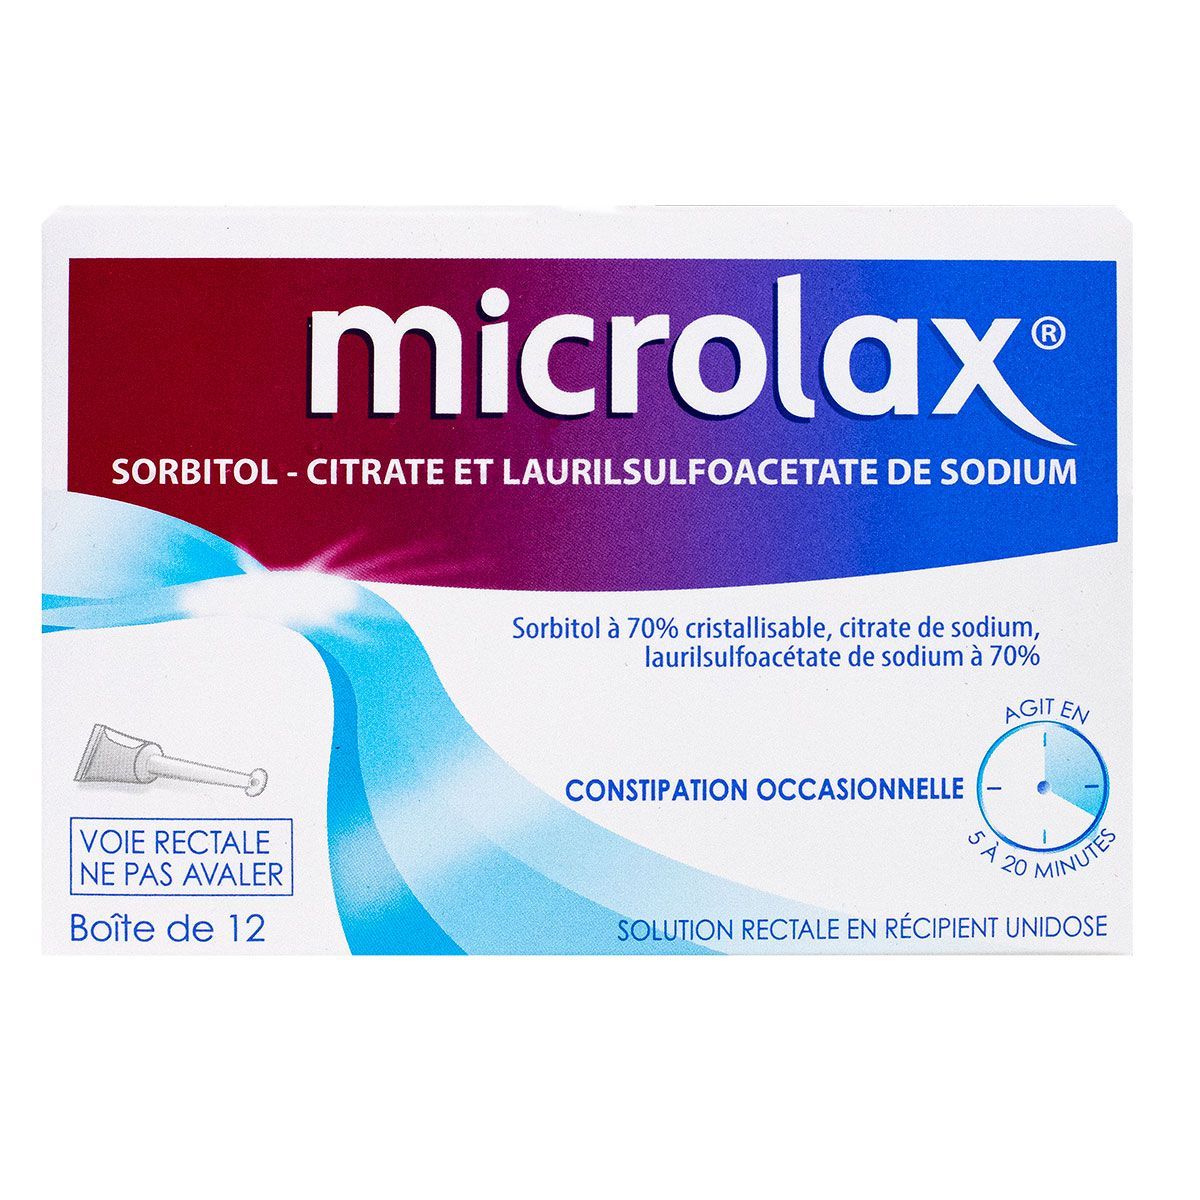 microlax solution rectale adulte unidoses soulage la constipation  occasionnelle chez l'adulte